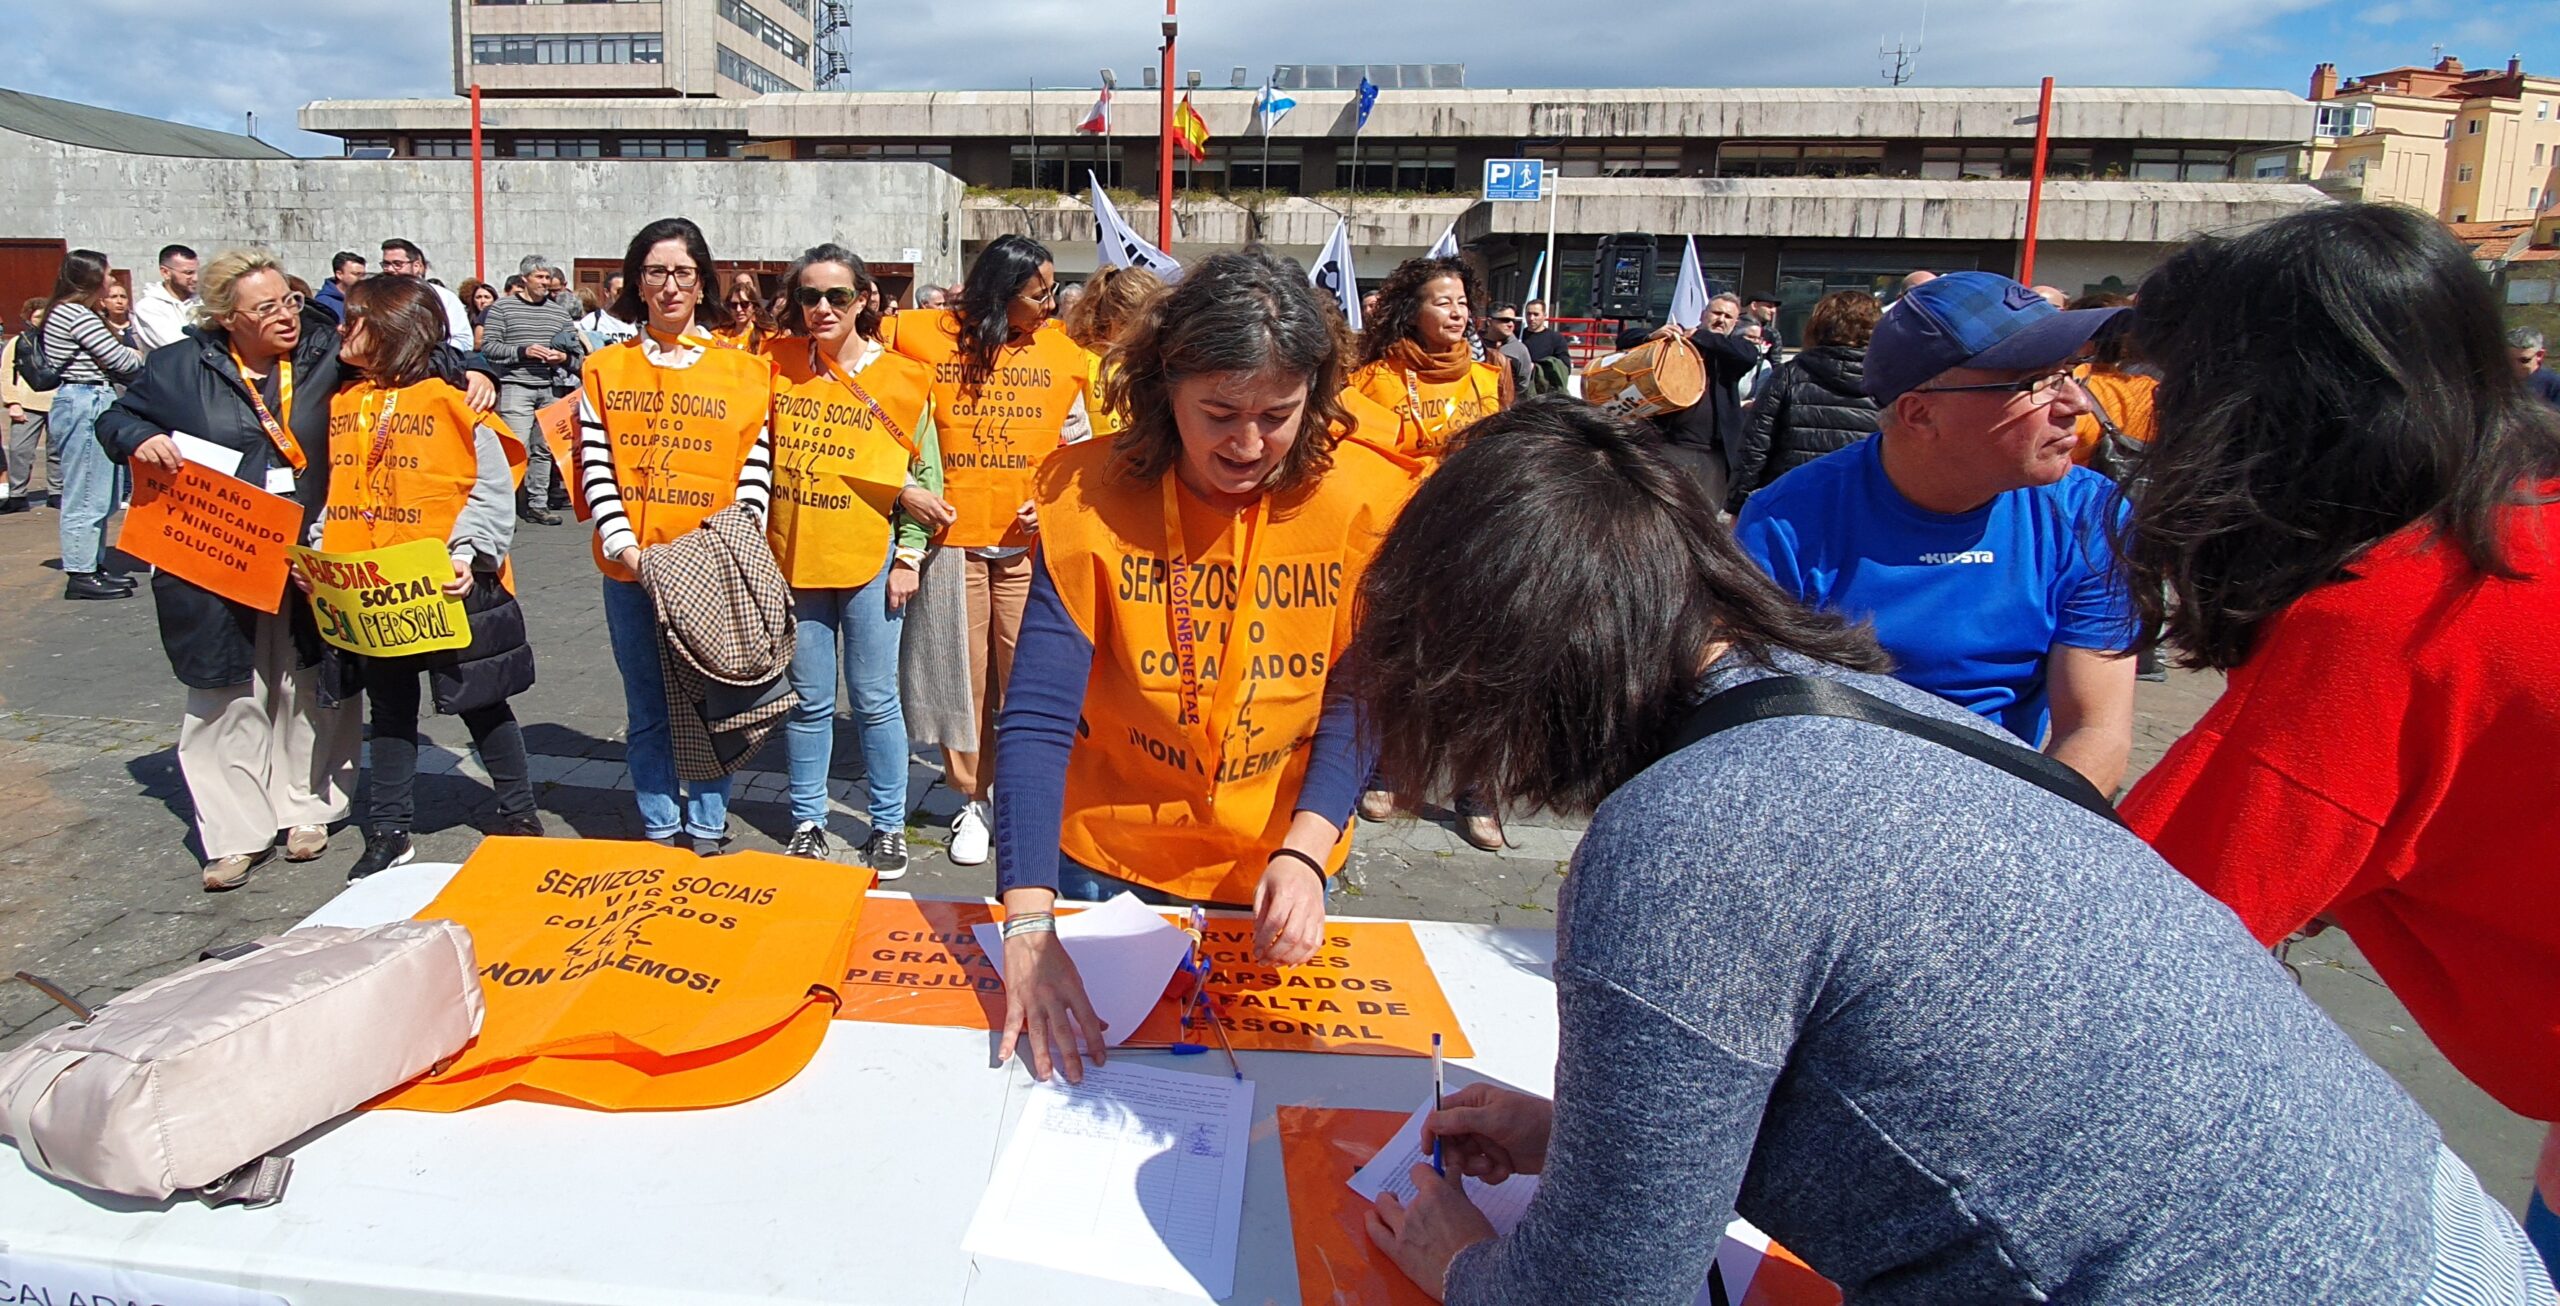 Servicios Sociales del Concello de Vigo: lista de espera kilométrica y ciudadanos abandonados